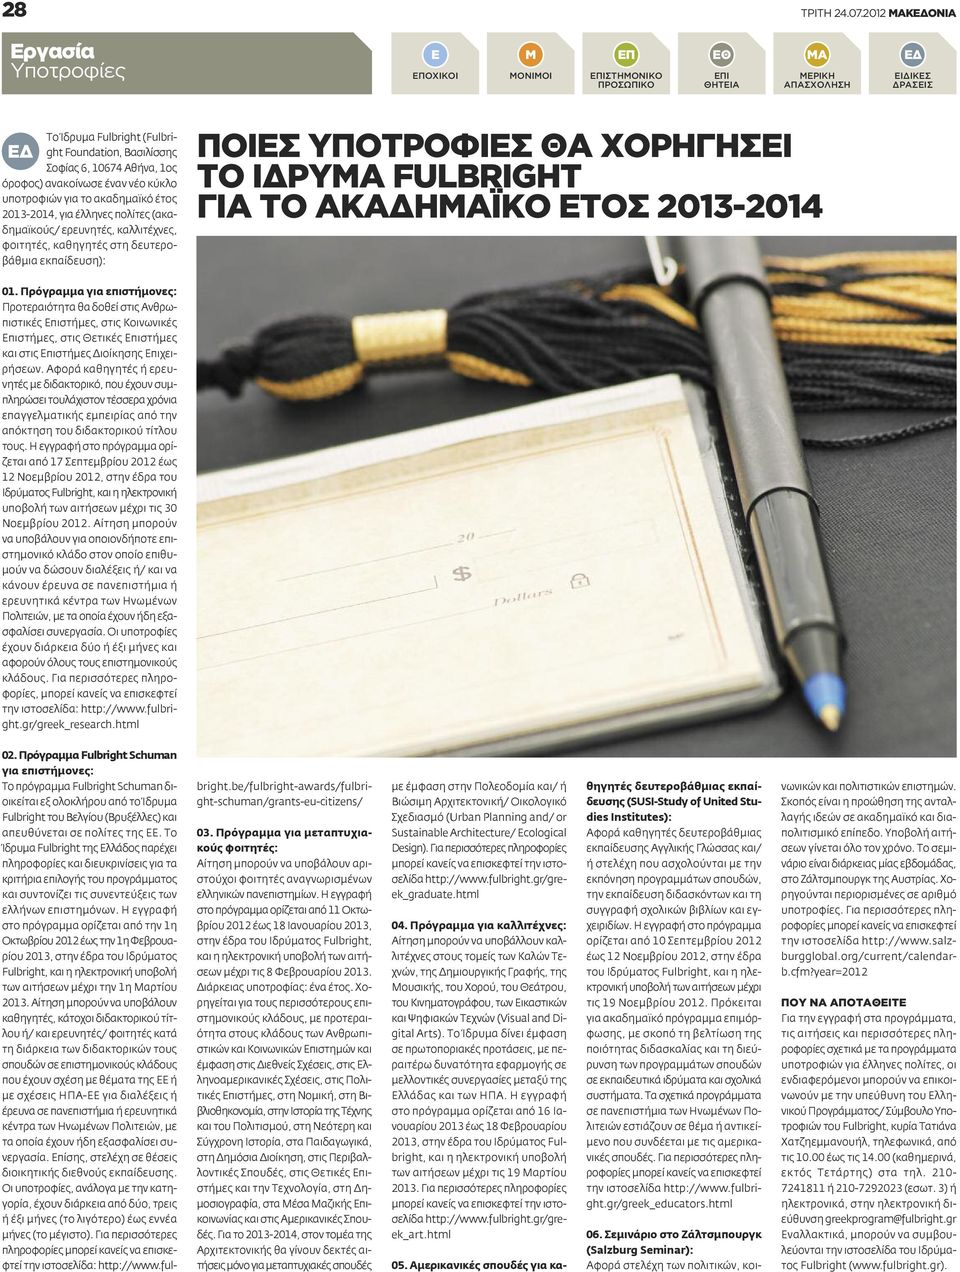 έτος 2013-2014, για έλληνες πολίτες (ακαδημαϊκούς/ ερευνητές, καλλιτέχνες, φοιτητές, καθηγητές στη δευτεροβάθμια εκπαίδευση): ΠΟΙΕΣ ΥΠΟΤΡΟΦΙΕΣ ΘΑ ΧΟΡΗΓΗΣΕΙ ΤΟ ΙΔΡΥΜΑ FULBRIGHT ΓΙΑ ΤΟ ΑΚΑΔΗΜΑΪΚΟ ΕΤΟΣ